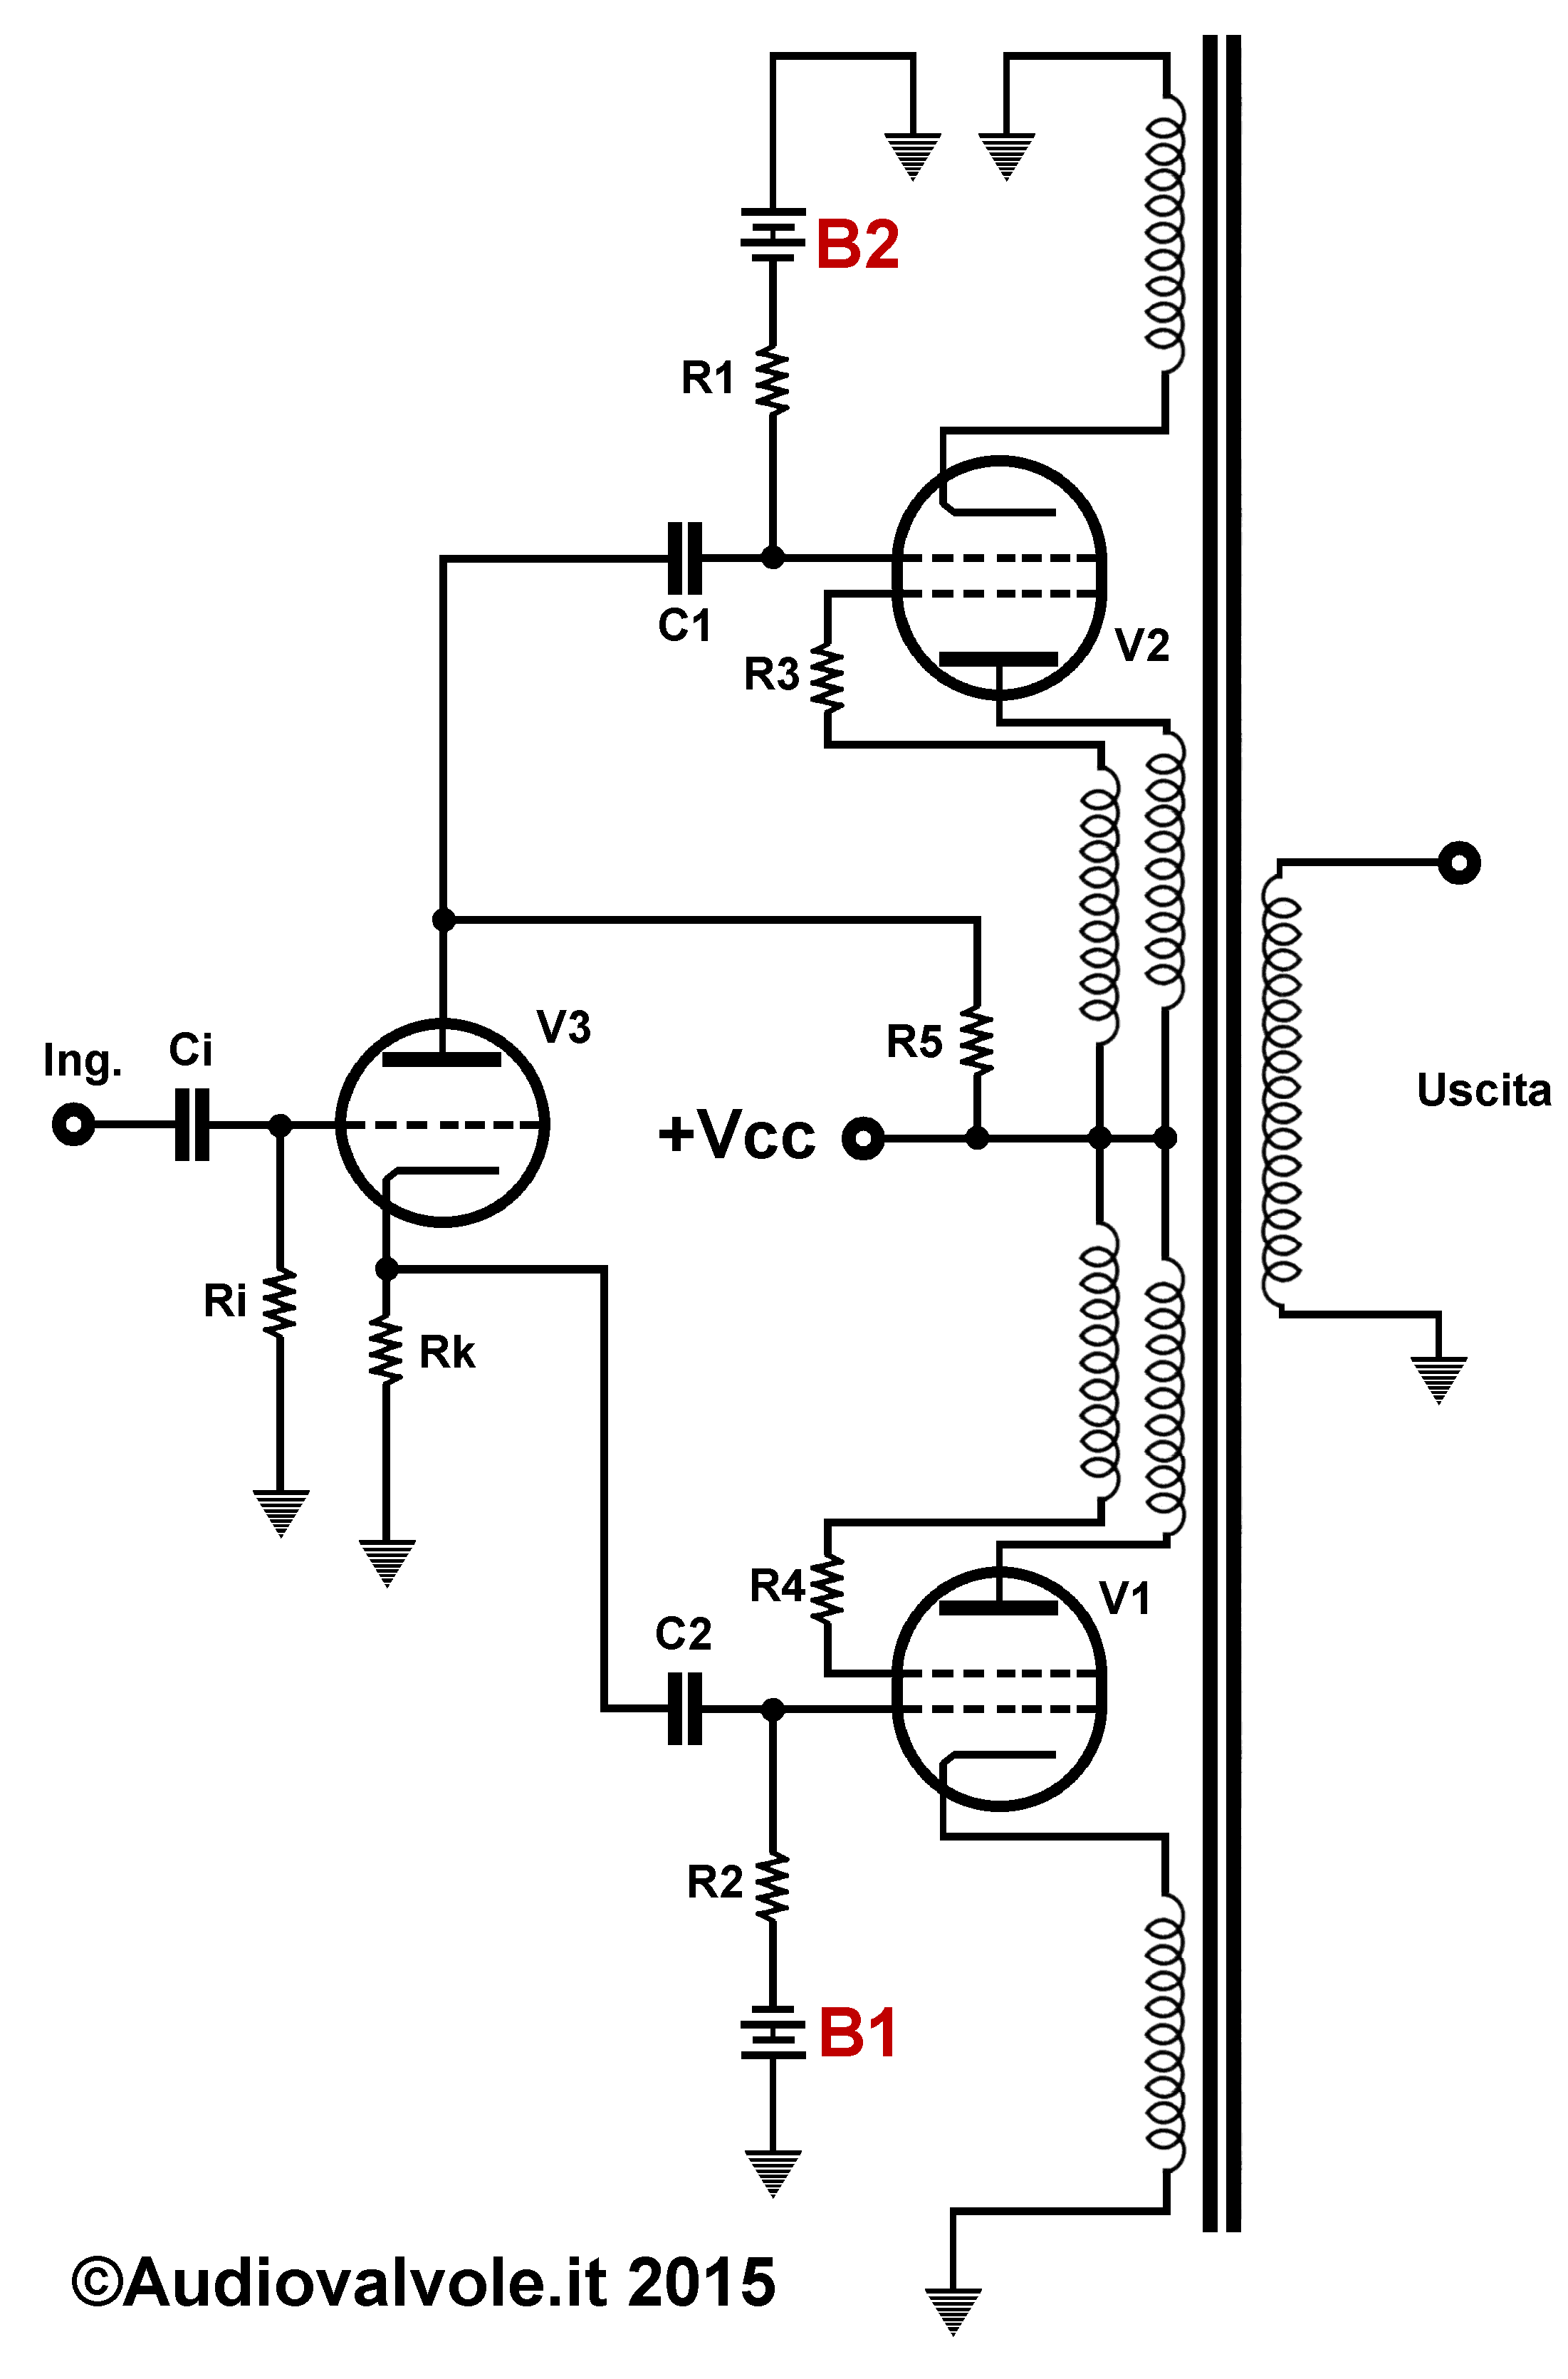 Amplificatore in configurazione Unity-coupled di Macintosh (Circuito brevettato McIntosh Laboratory)